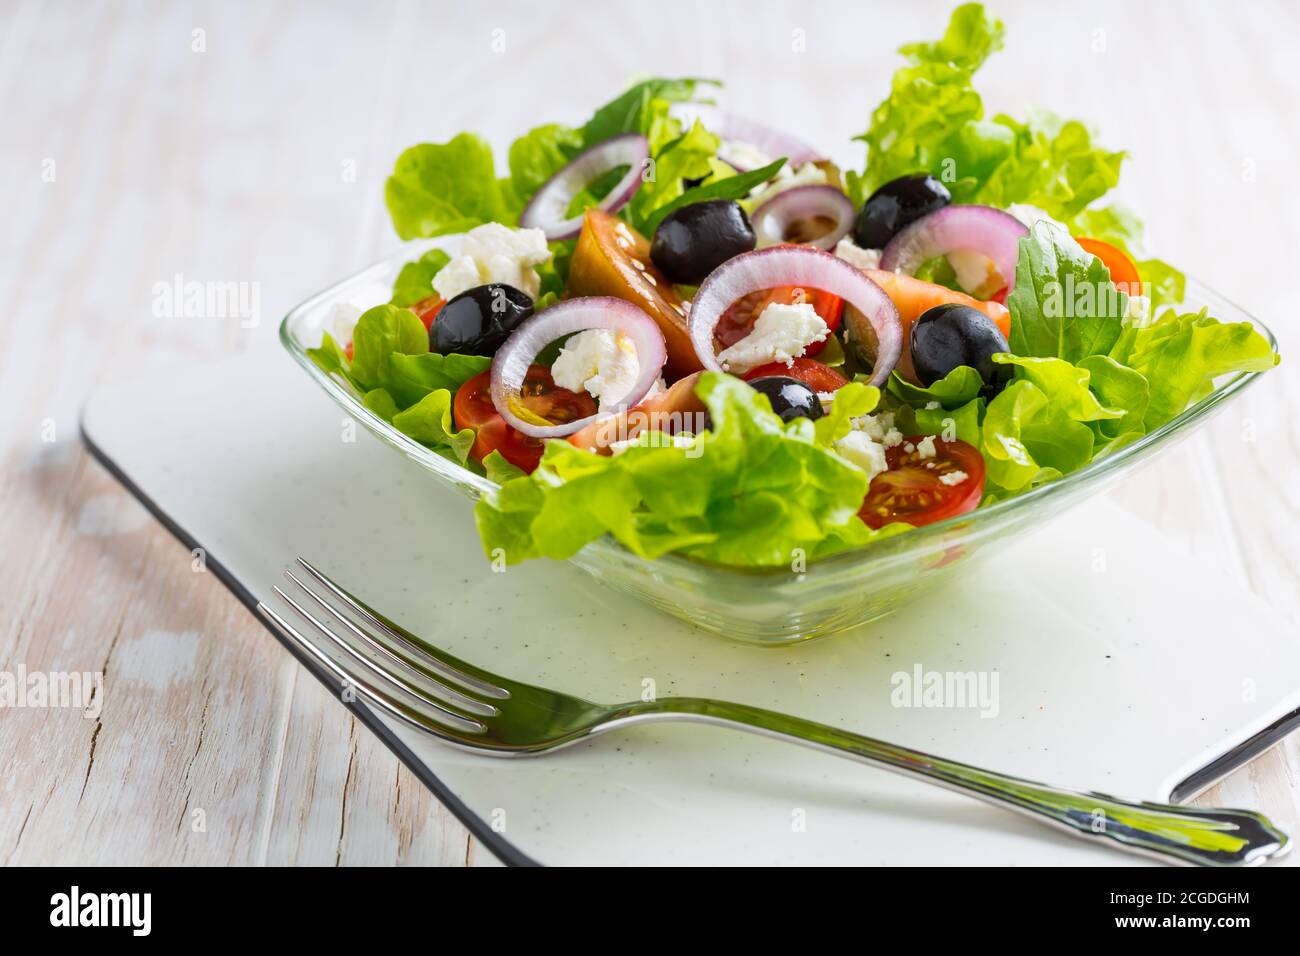 Insalata greca con formaggio feta, olive nere e cipolla su fondo bianco Foto Stock